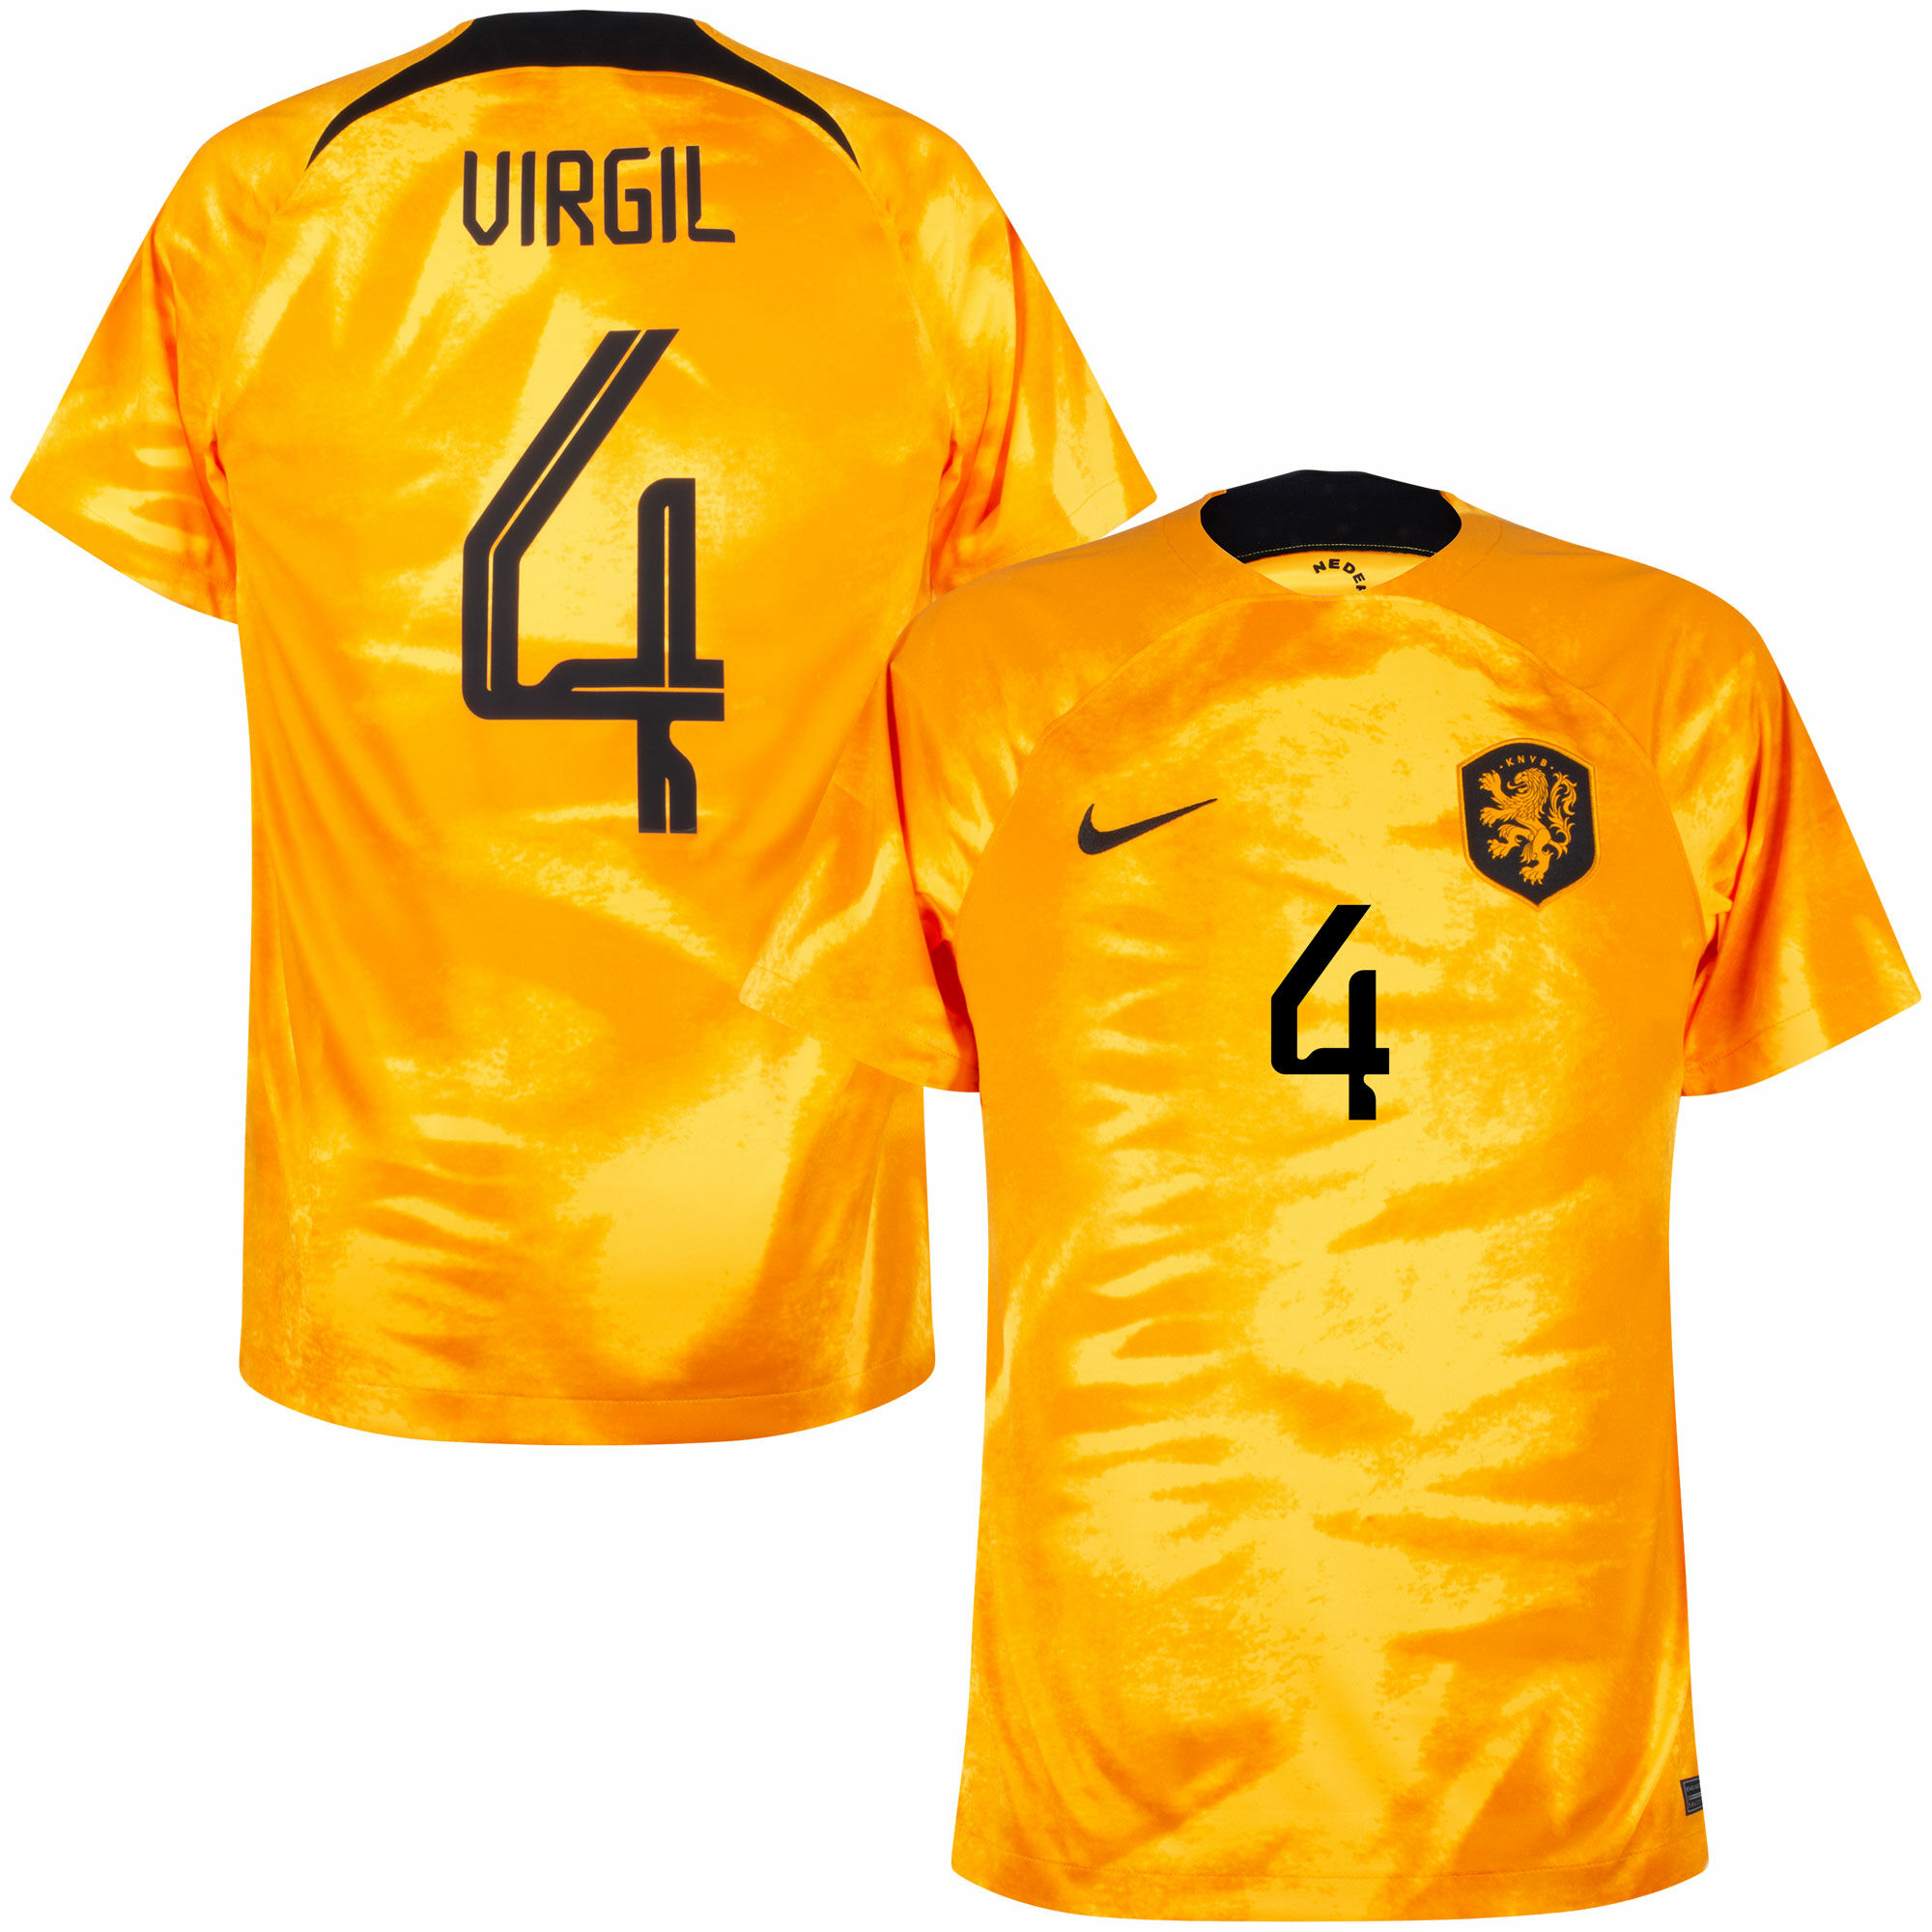 Nizozemí - Dres fotbalový - oranžový, oficiální potisk, číslo 4, domácí, sezóna 2022/23, Virgil van Dijk